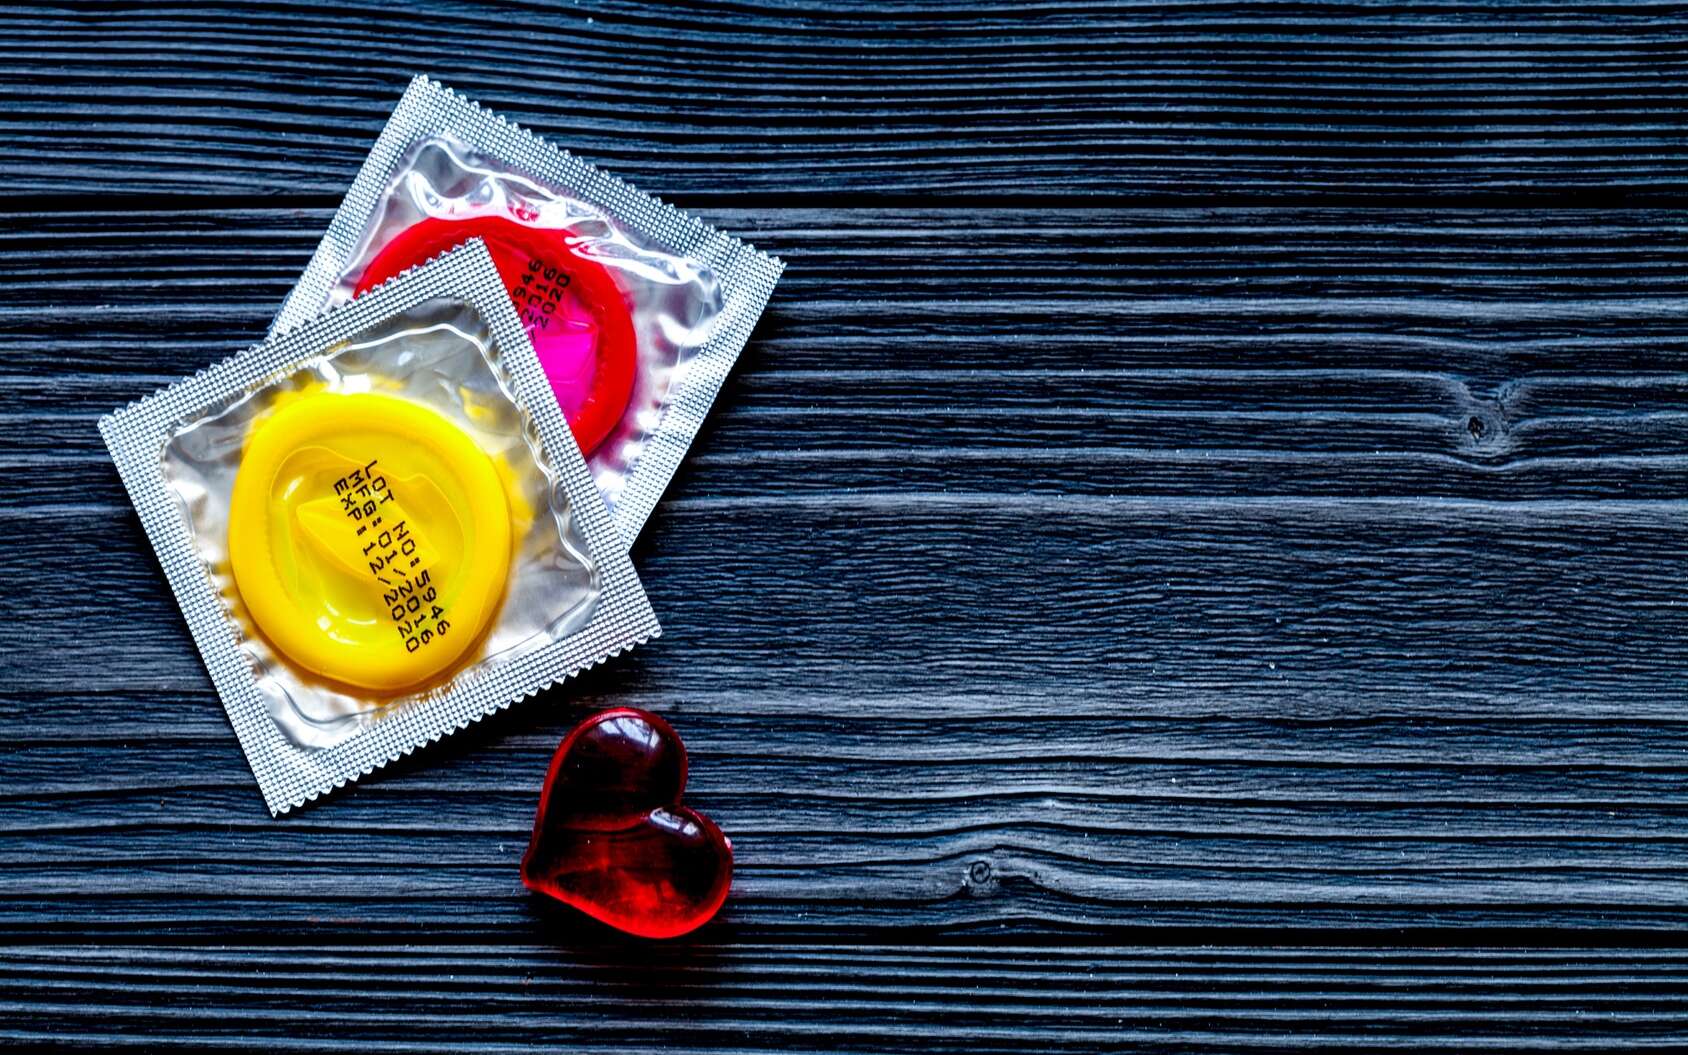 Le préservatif protège efficacement contre les infections sexuellement transmissibles et les grossesses non désirées. Cette étude avance qu'il favoriserait également l'implantation d'une flore vaginale bienfaitrice. © 279photo, Fotolia